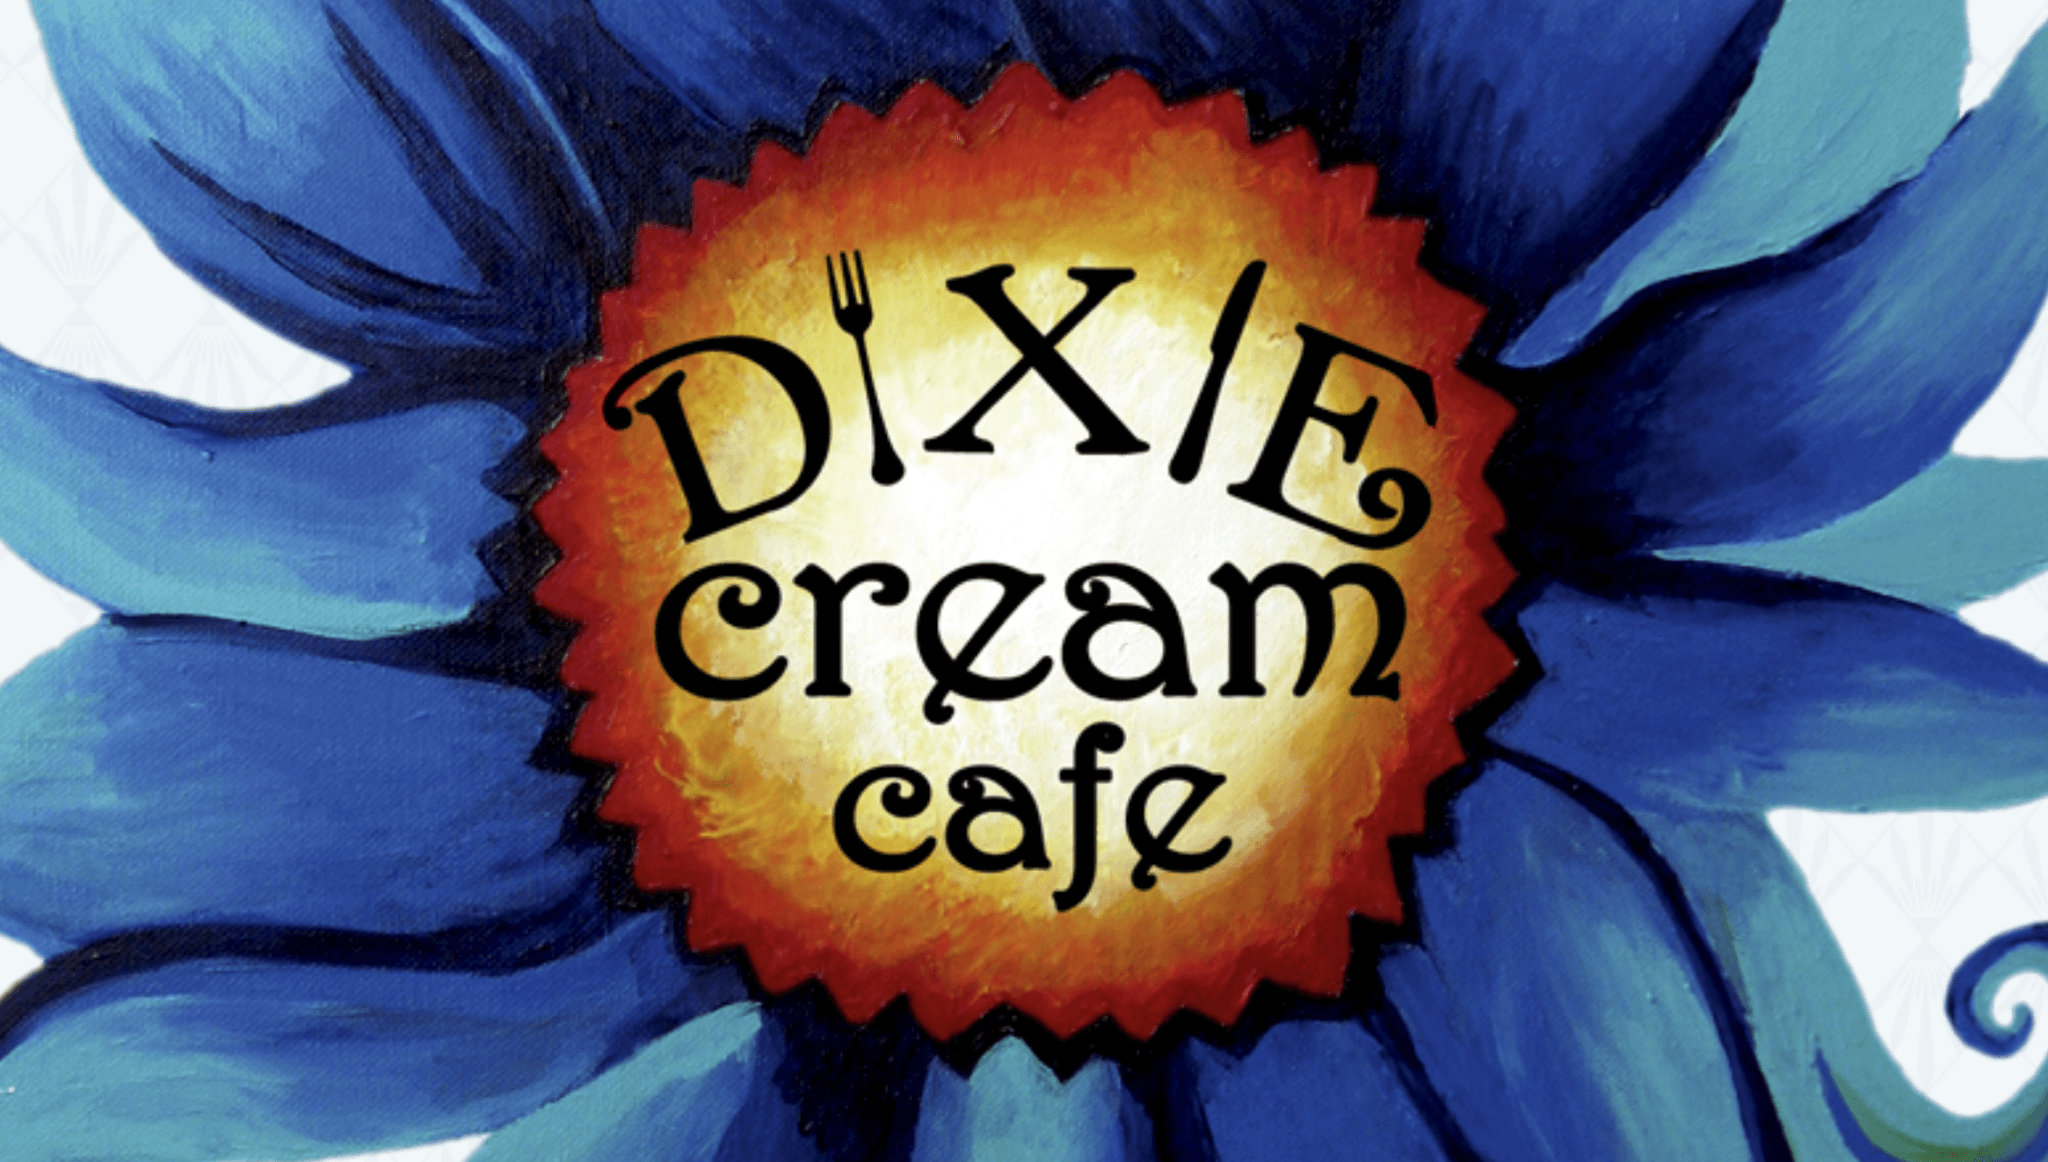 Dixie Cream Café in orlando